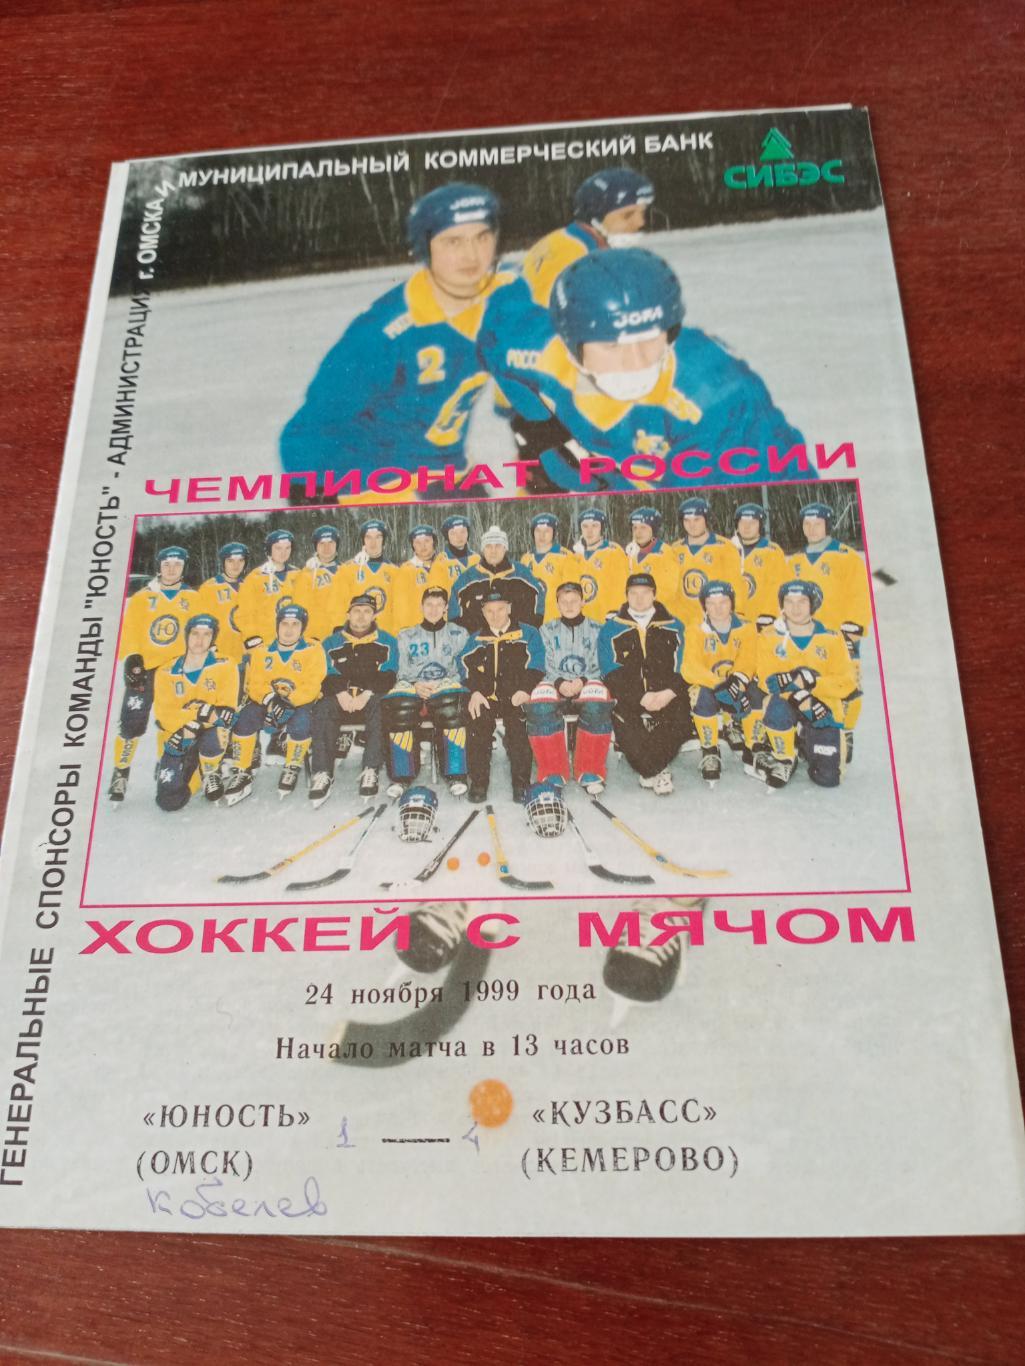 Юность Омск - Кузбасс Кемерово. 24 ноября 1999 год